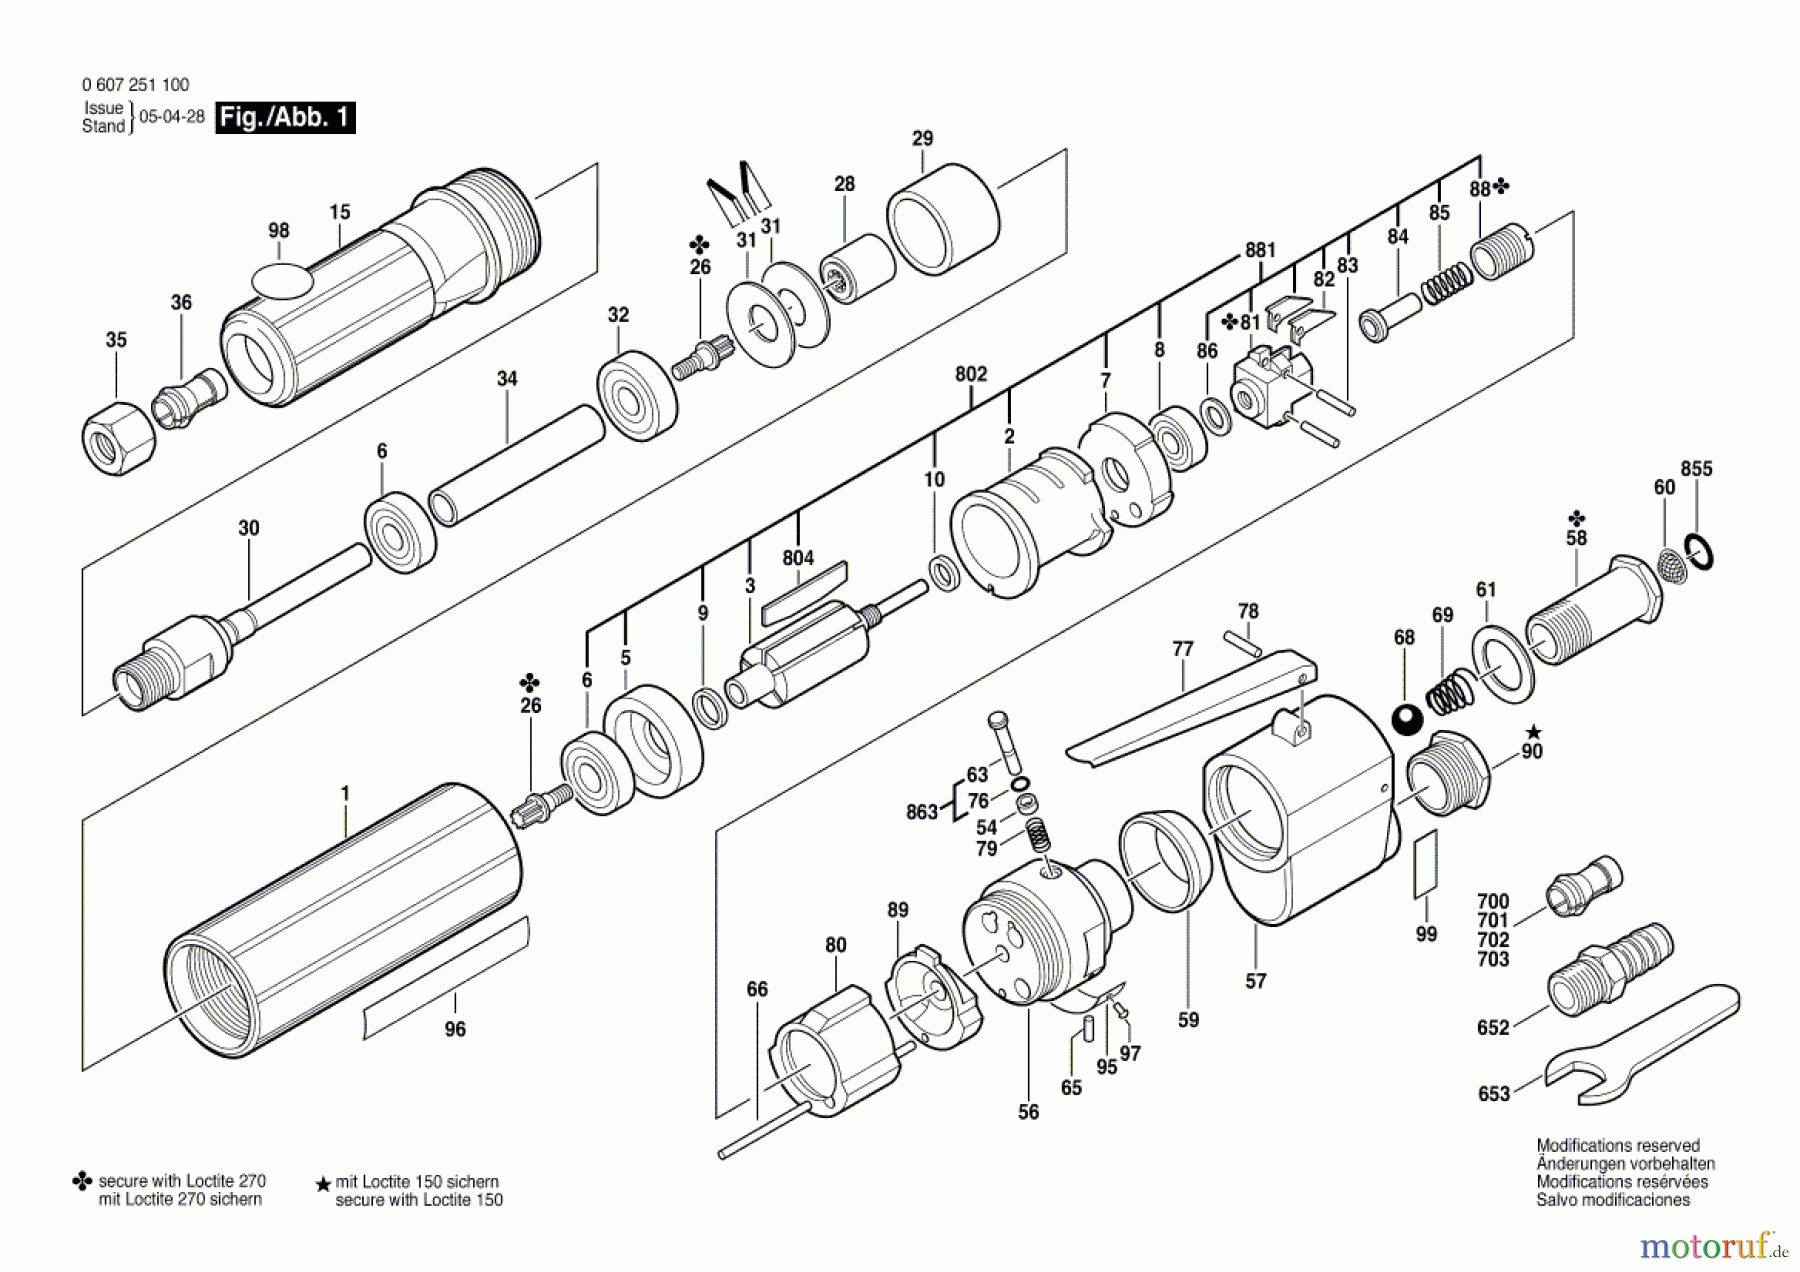  Bosch Werkzeug Hf-Geradschleifer GERADSCHLEIFER 370 WATT-SERIE Seite 1